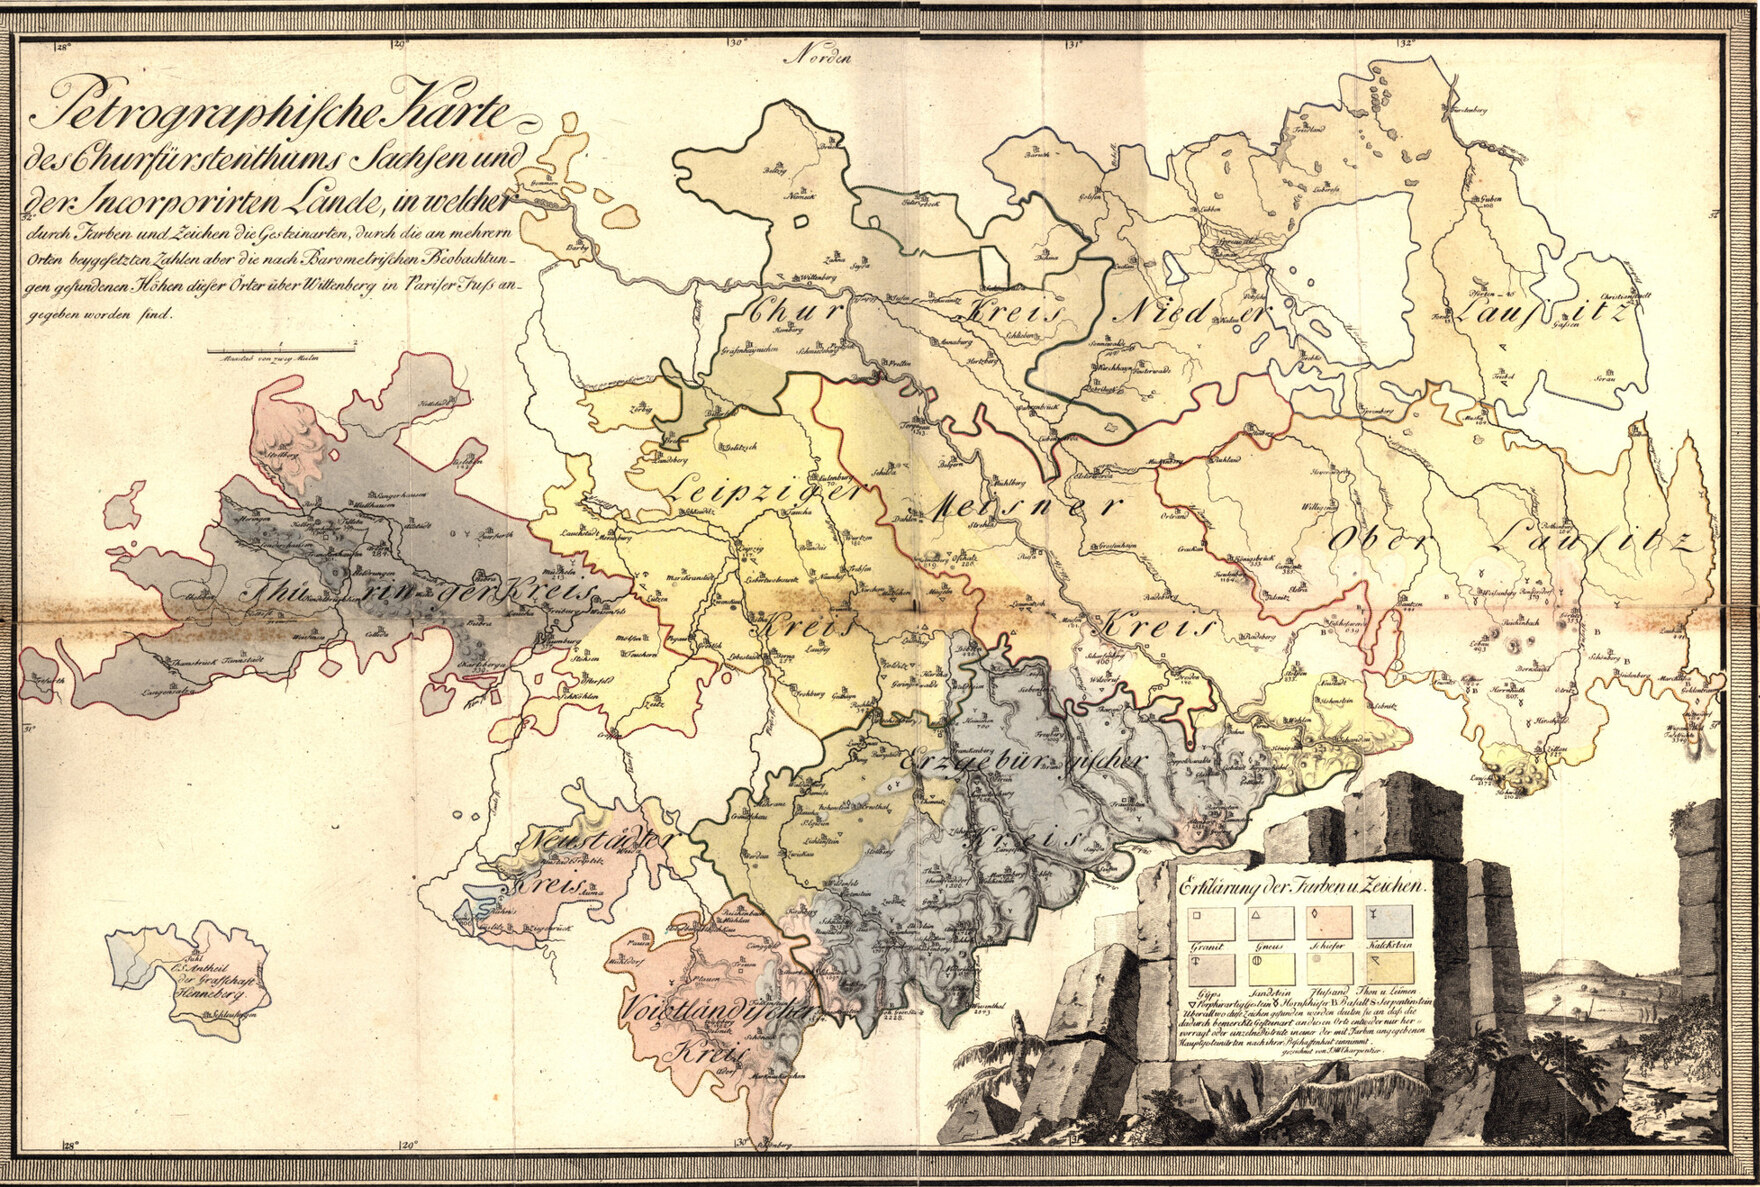 Die 1778 von Johann Friedrich Wilhelm von Charpentier (1738-1805) veröffentlichte »Petrographische Charte des Churfürstentums Sachsen« gilt als erste geologische Karte Sachsens.